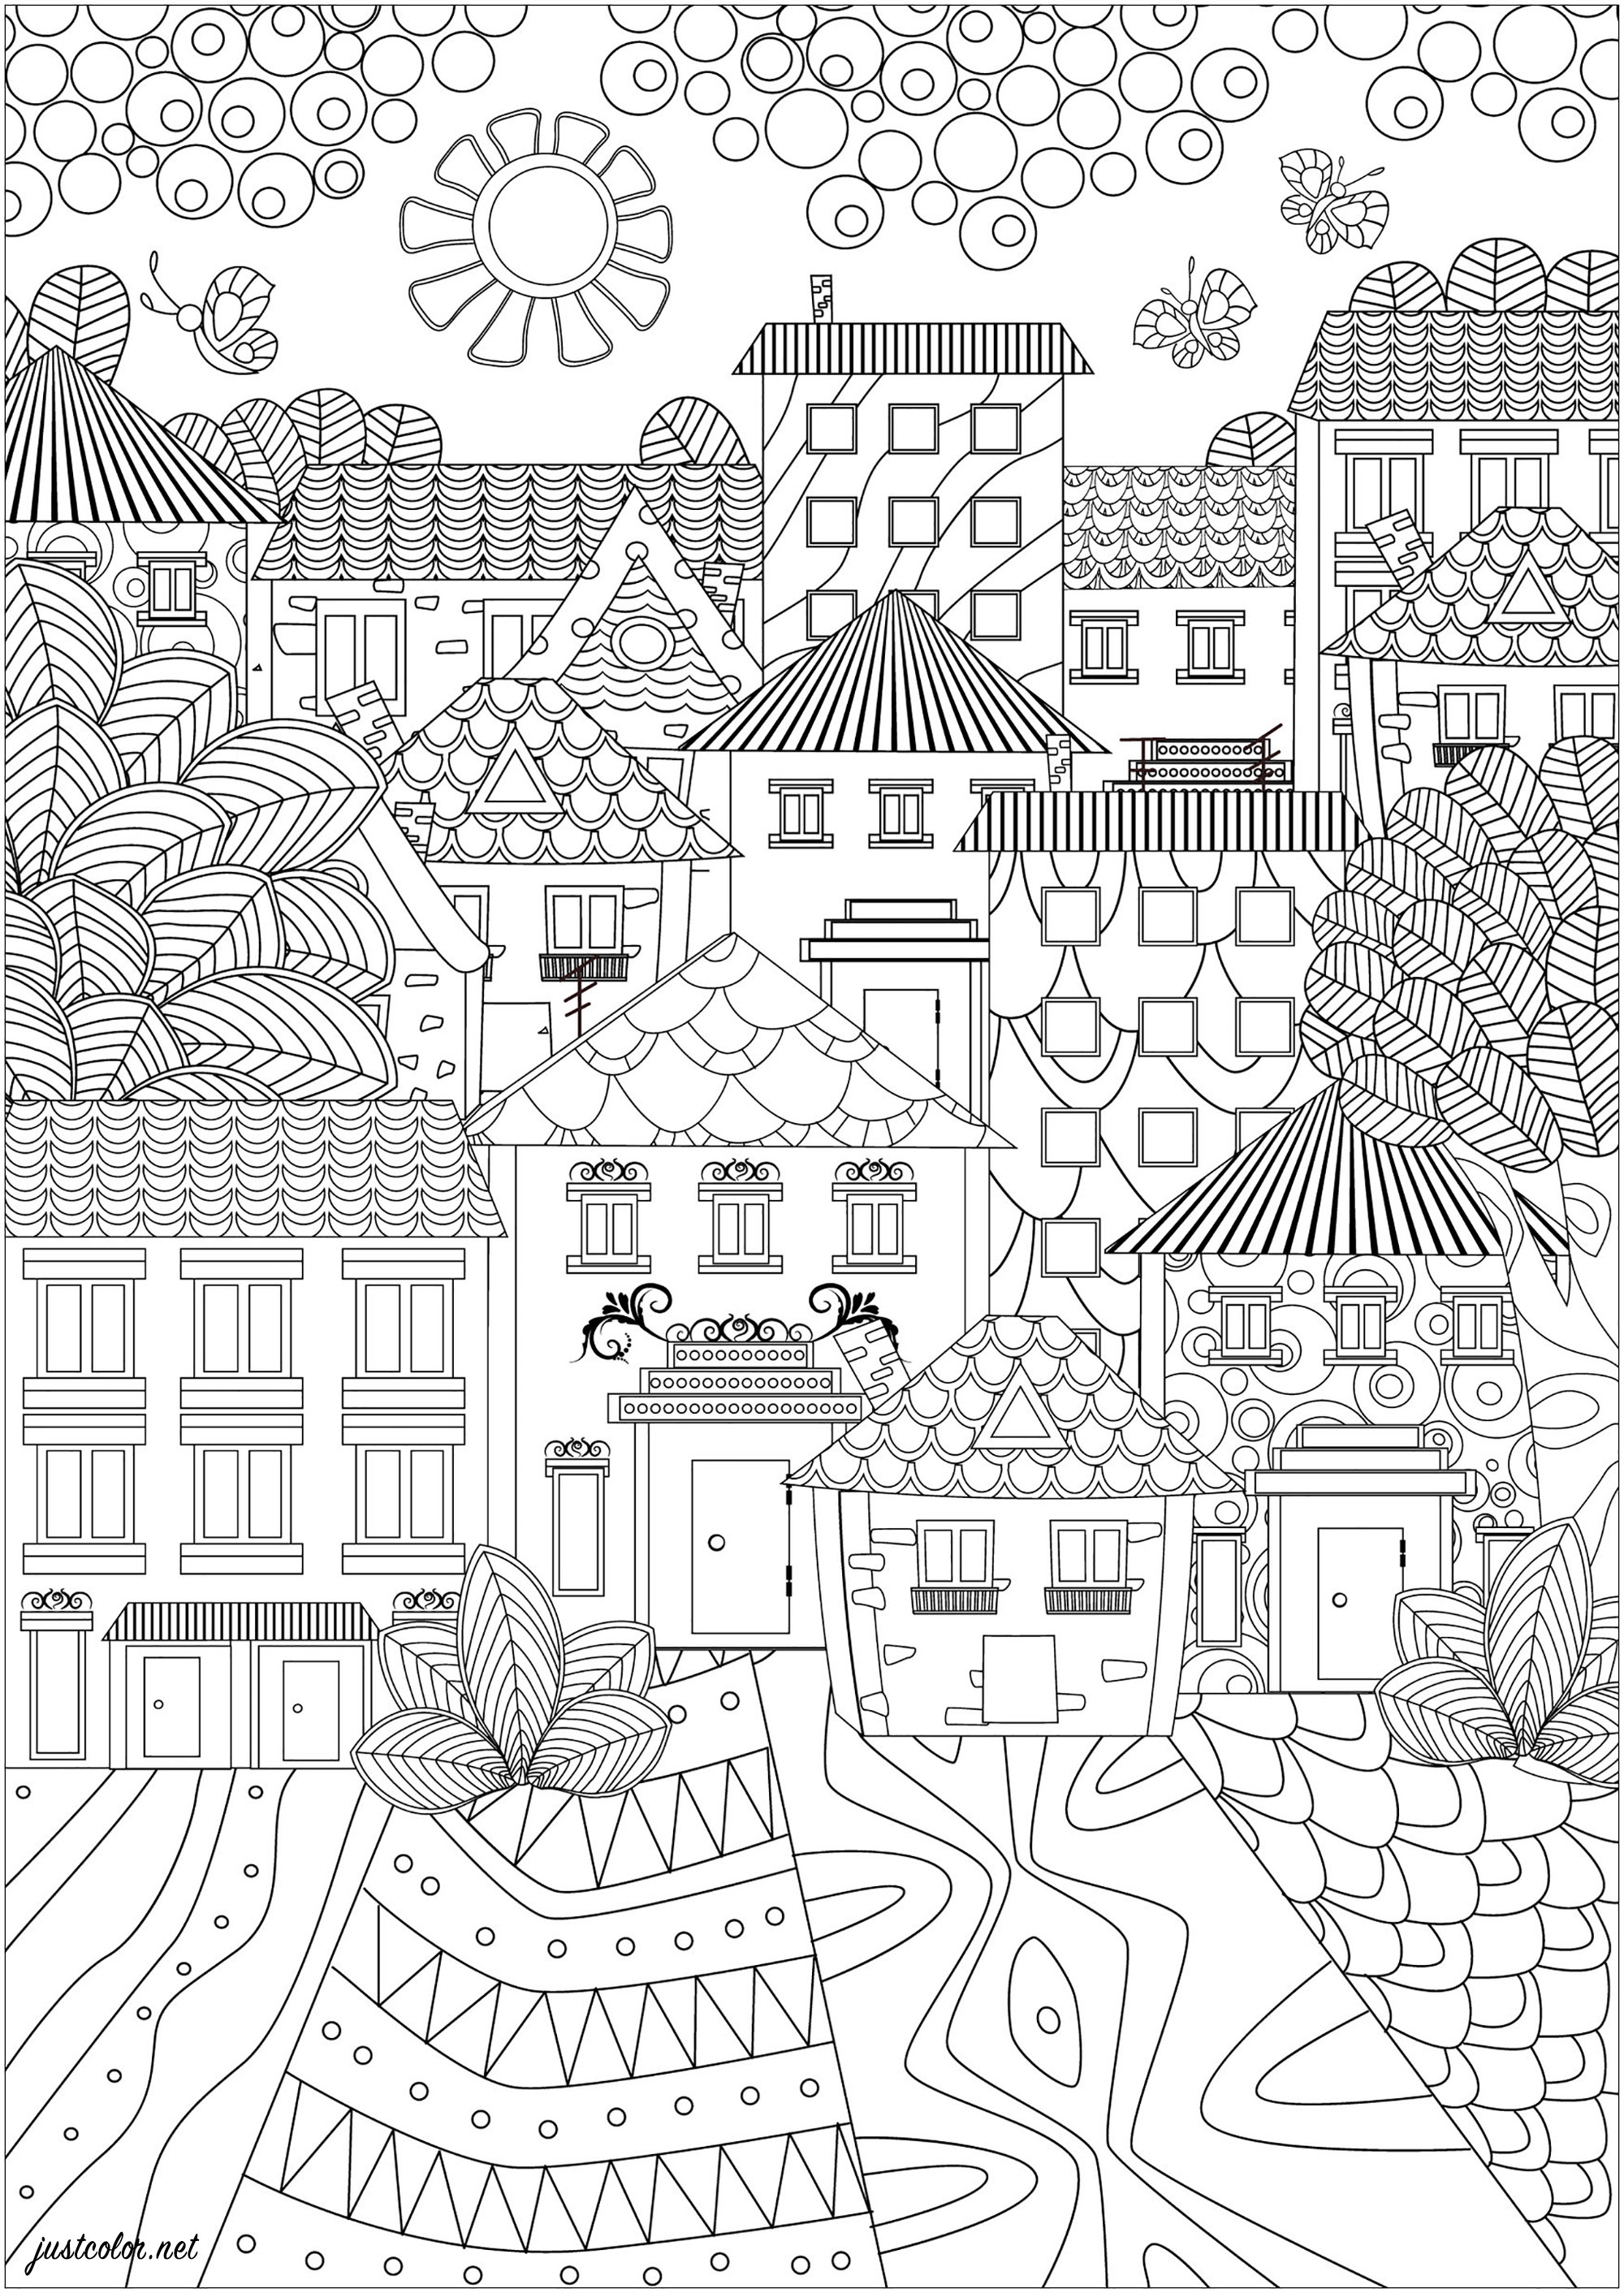 Eine Stadt mit schönen Häusern mit einfachem und elegantem Design. Diese Färbung Seite ist eine sehr einfache und elegante Stadtbild. Es zeigt eine Stadt, die aus hübschen Häusern mit einfachen und eleganten Designs besteht. Die Dächer sind spitz und die Fenster sind klein und hübsch verziert. Die Straßen sind mit Mustern gepflastert, die sehr angenehm zu färben sein wird.